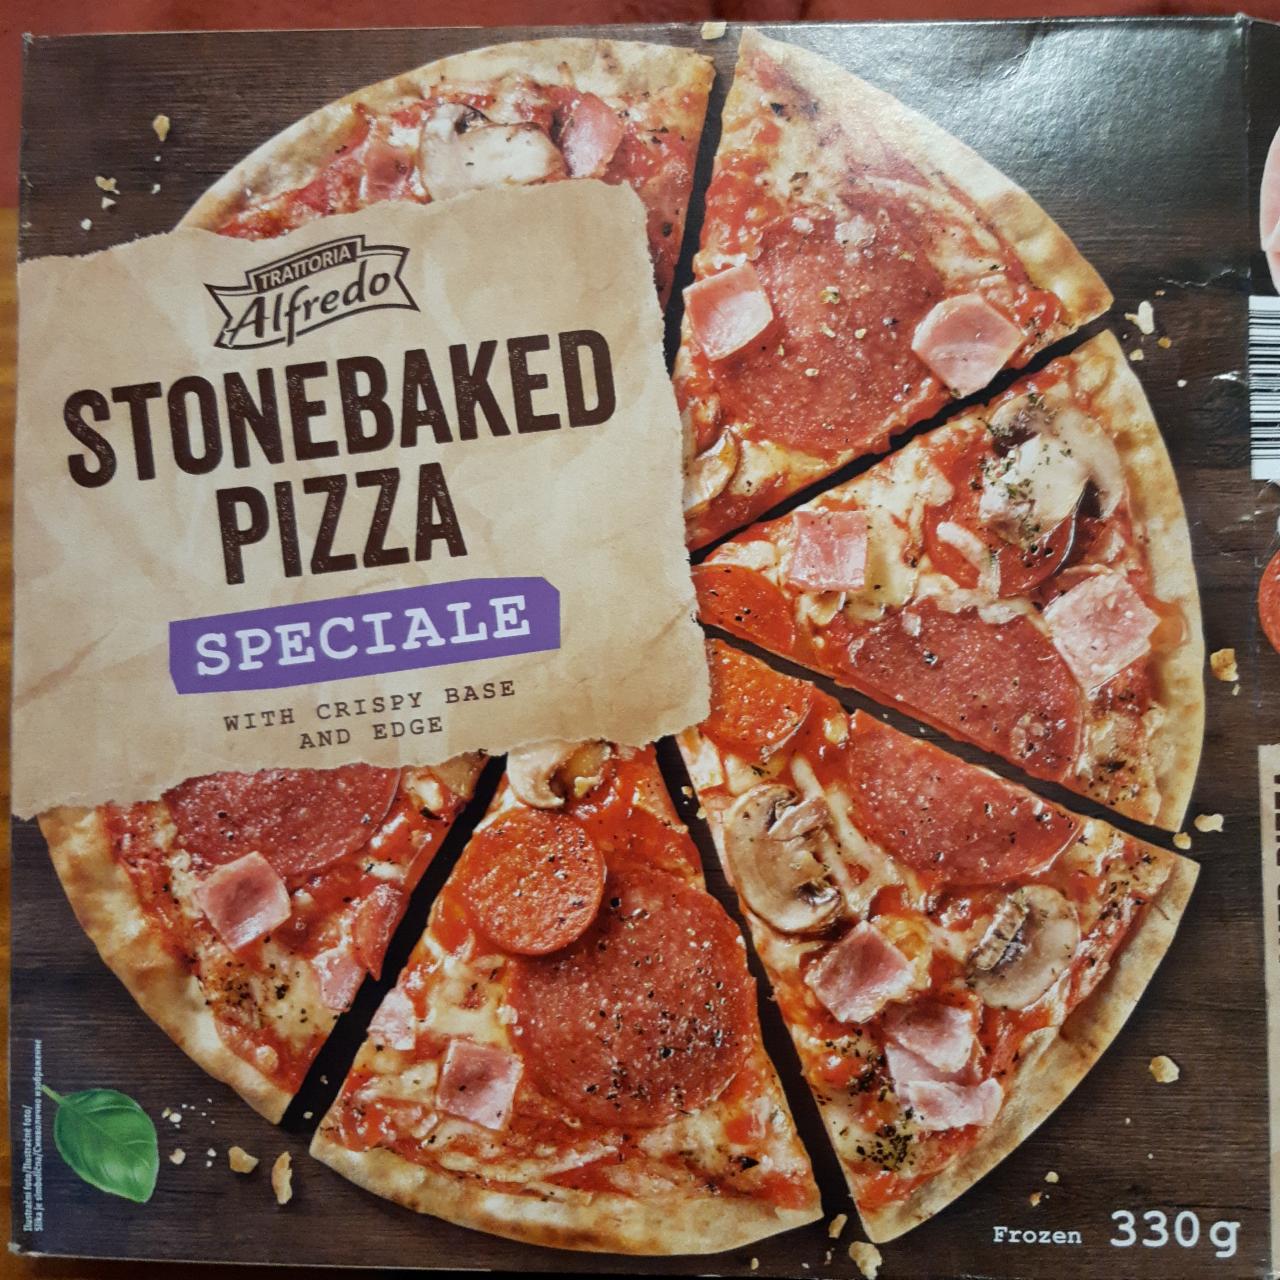 Zdjęcia - Stonebaked Pizza Speciale Trattoria Alfredo